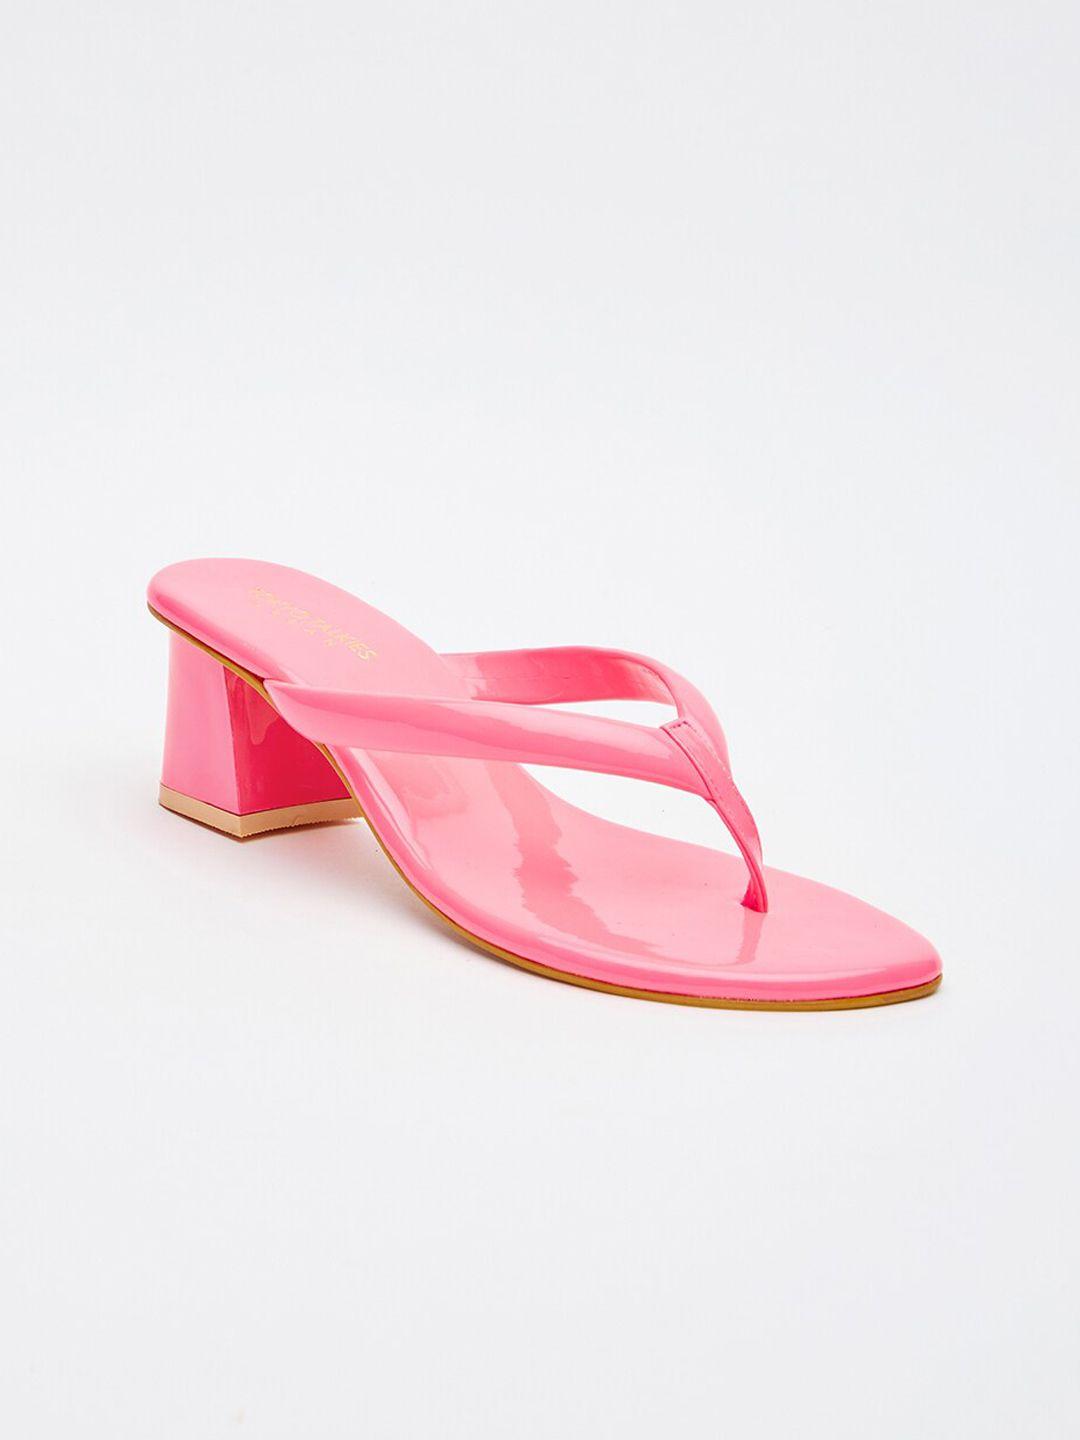 tokyo talkies women pink block heels sandals